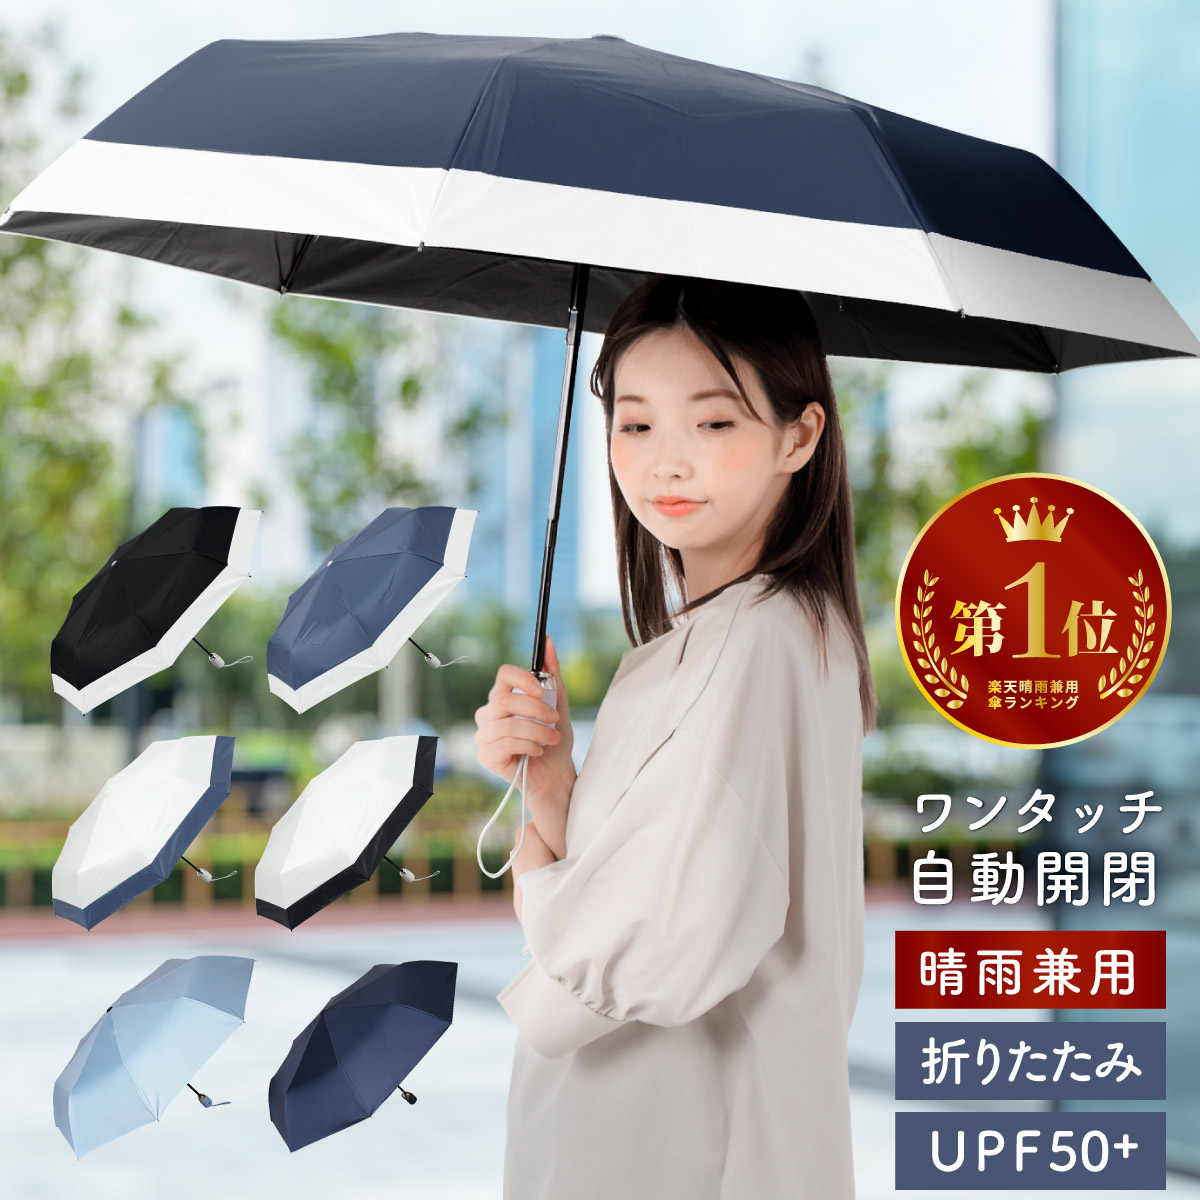 新発売の 黒 晴雨兼用 折りたたみ傘 折り畳み式傘 撥水加工 遮光 UVカット 日傘 韓国